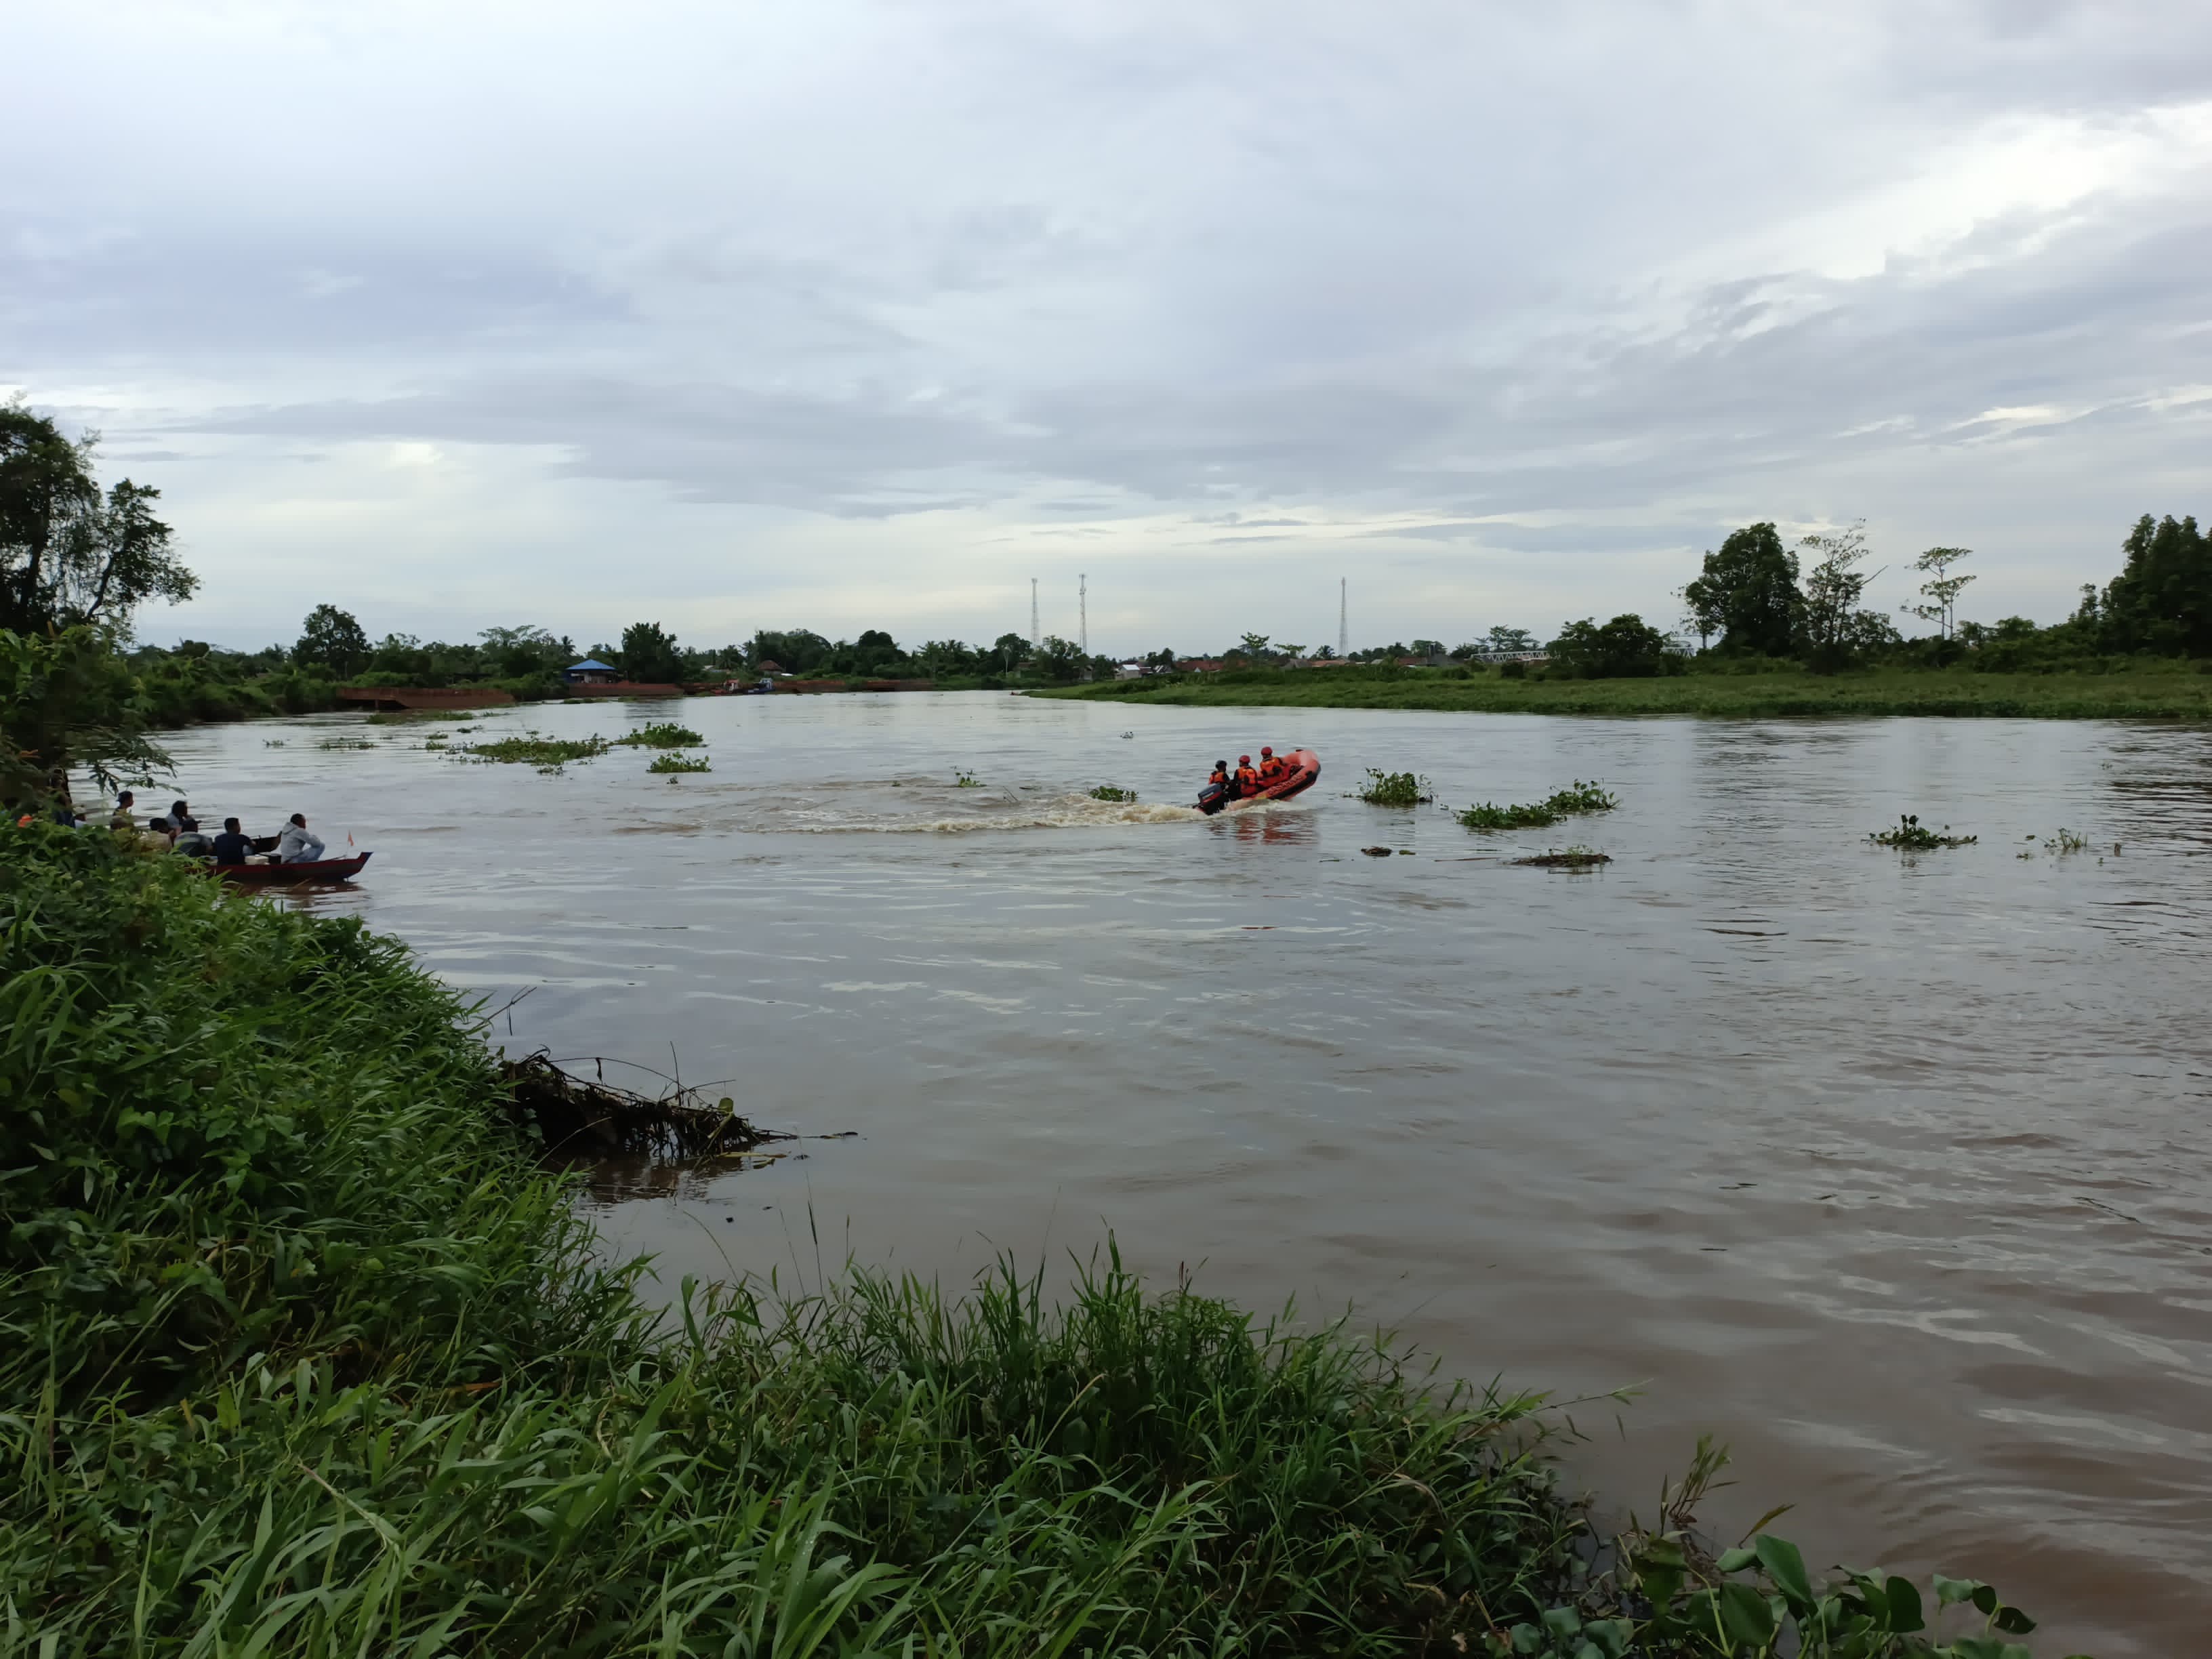 Diterjang Angin Kencang, Perahu Sampan Terbalik di Sungai Ogan, 1 Penumpang Dinyatakan Hilang Tenggelam 